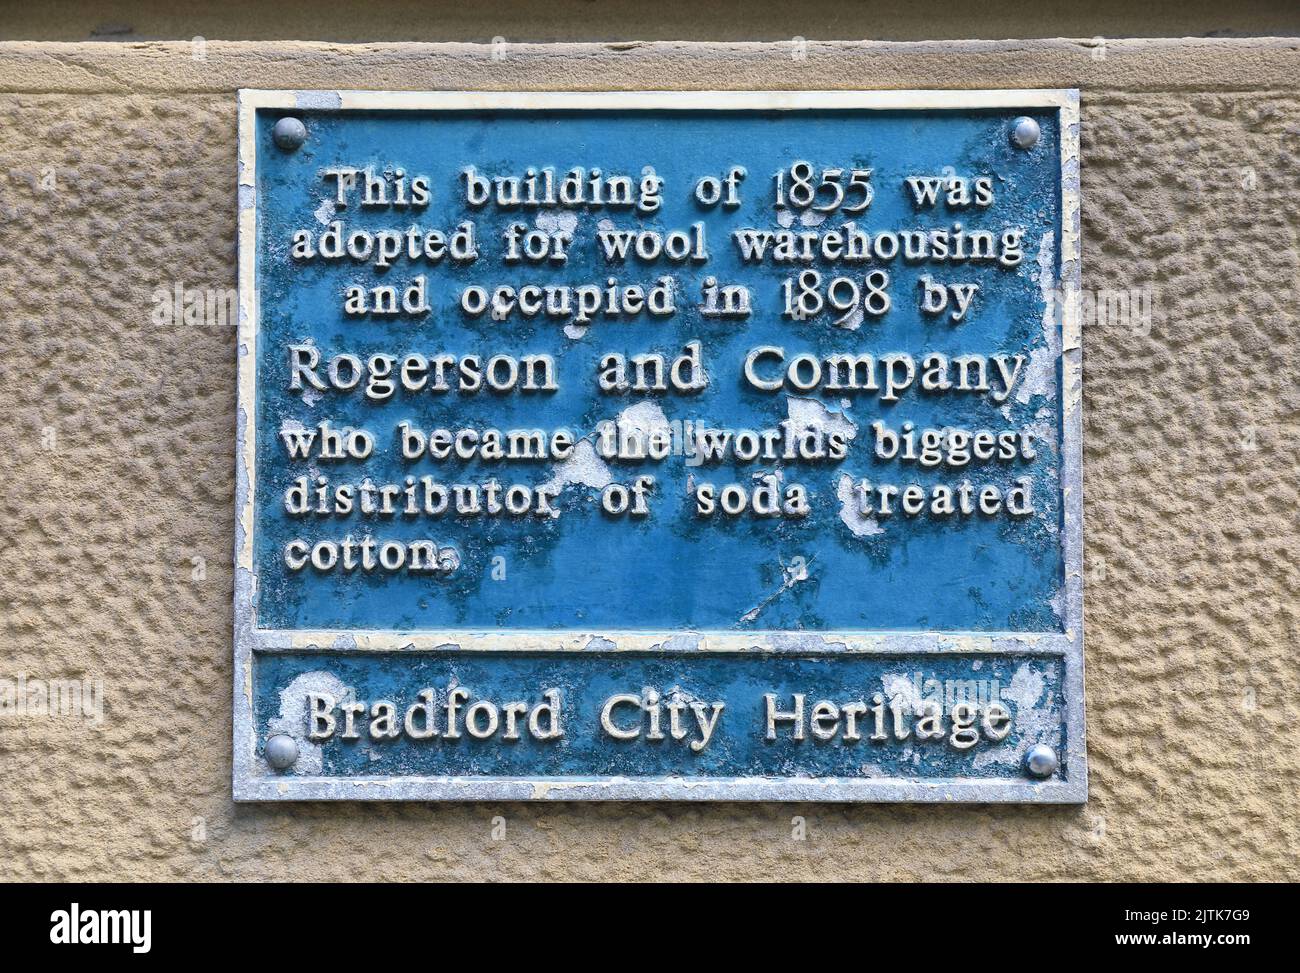 Little Germany, einzigartiges Gebiet der Stadt Bradford, mit vielen denkmalgeschützten Gebäuden, erbaut von 1855 bis 1890, als die Stadt eine boomende Wollindustrie in Großbritannien hatte Stockfoto